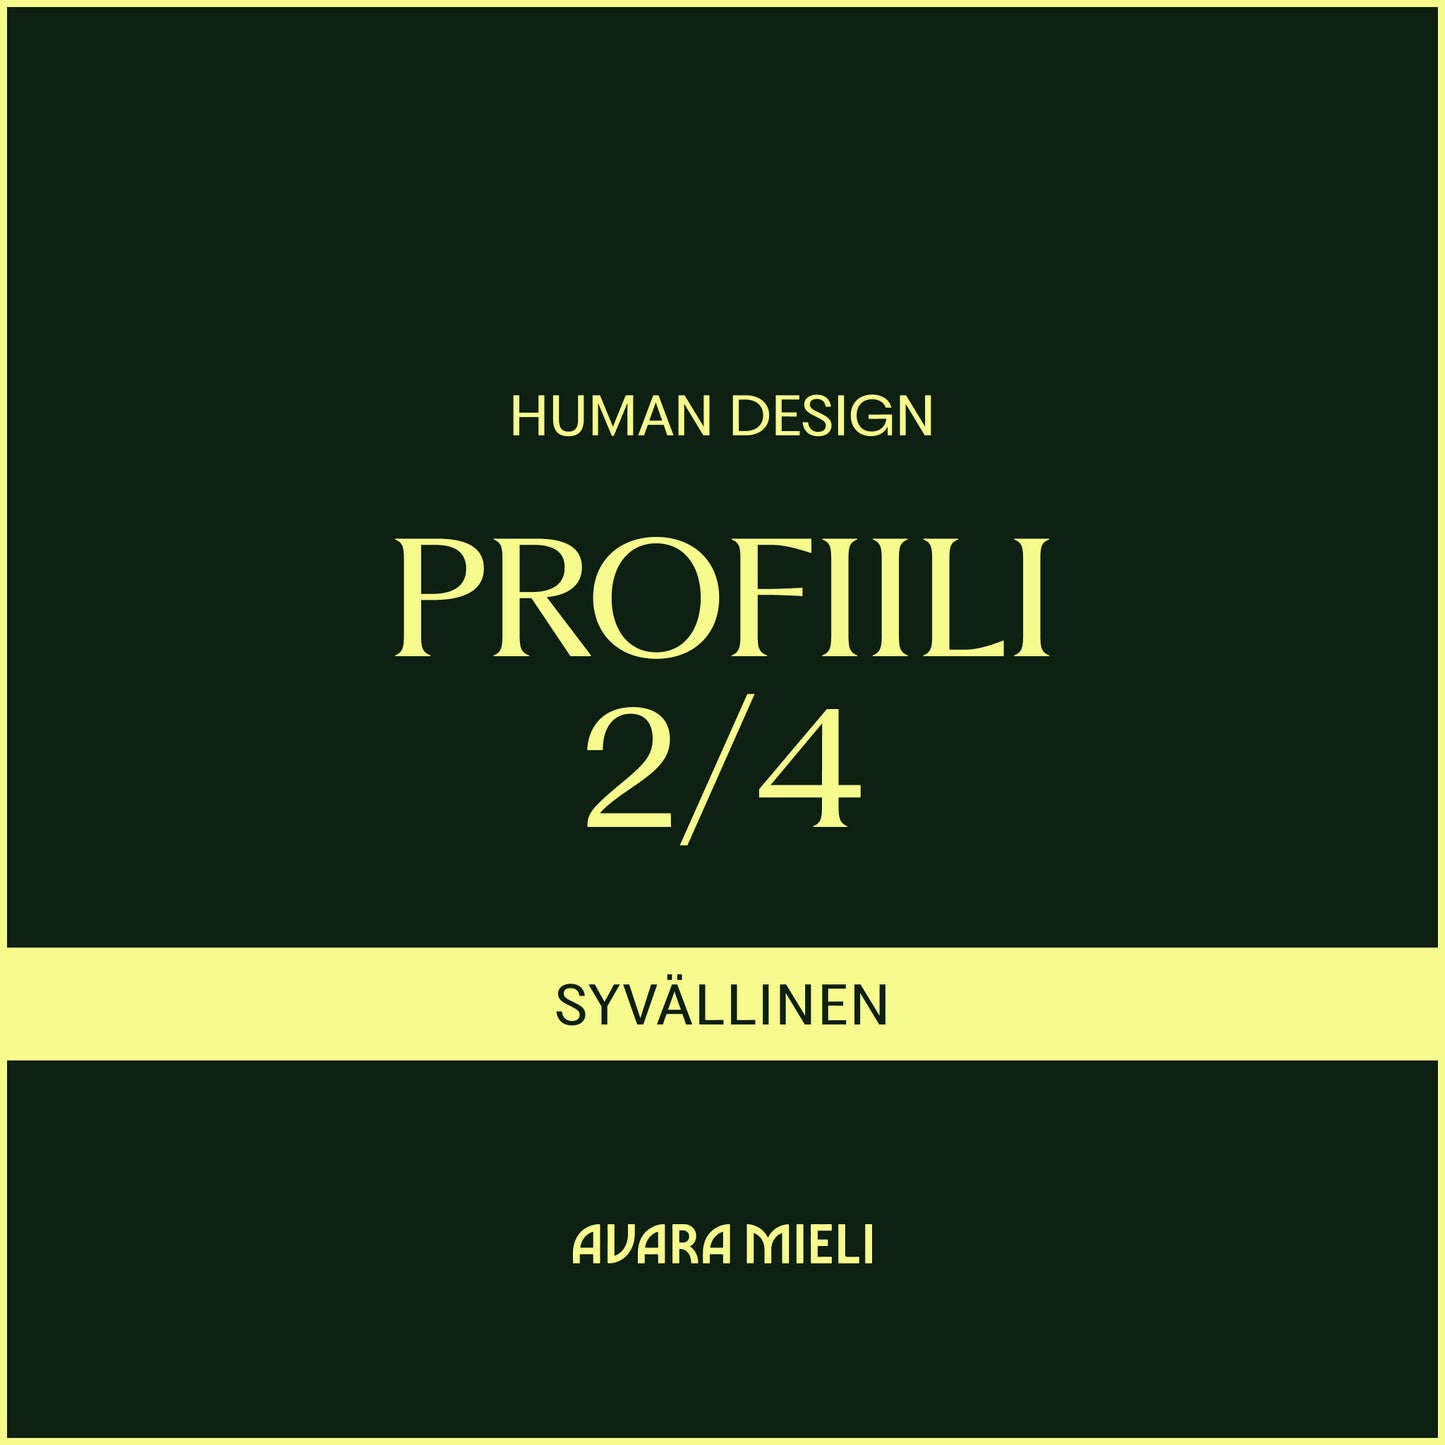 Human Design Profiili 2/4